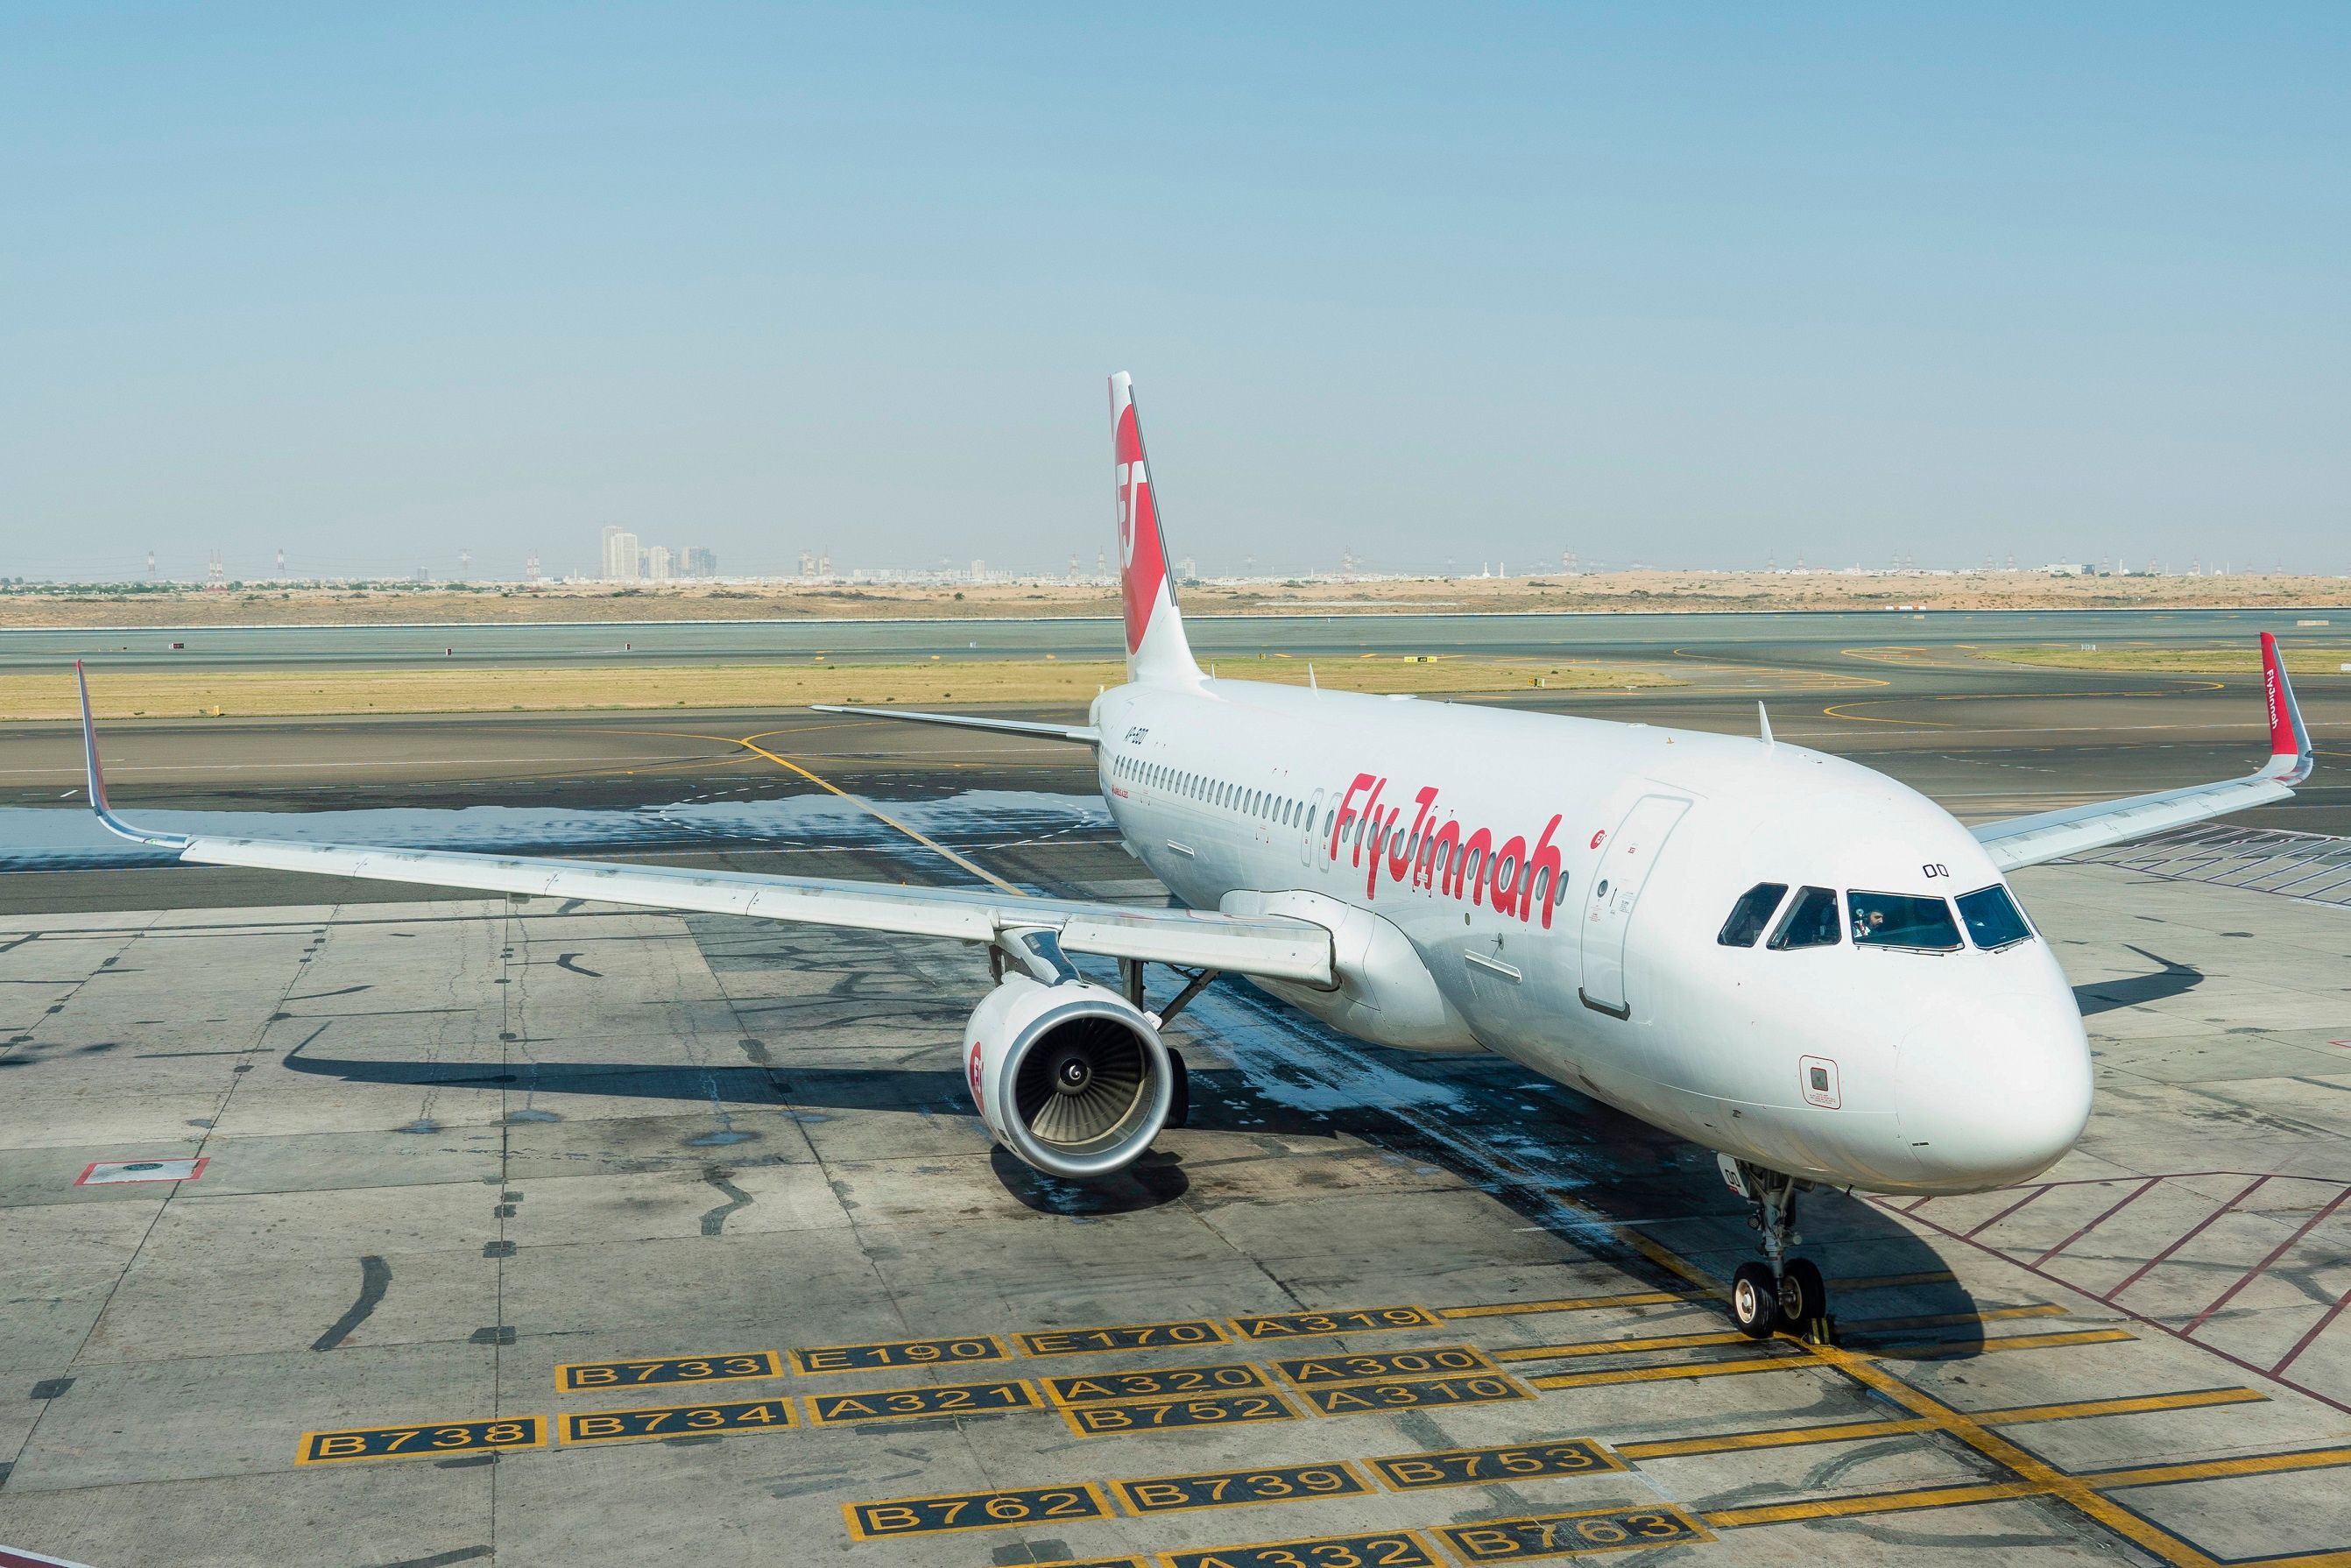 FJ inaugurates its first international flight to Sharjah